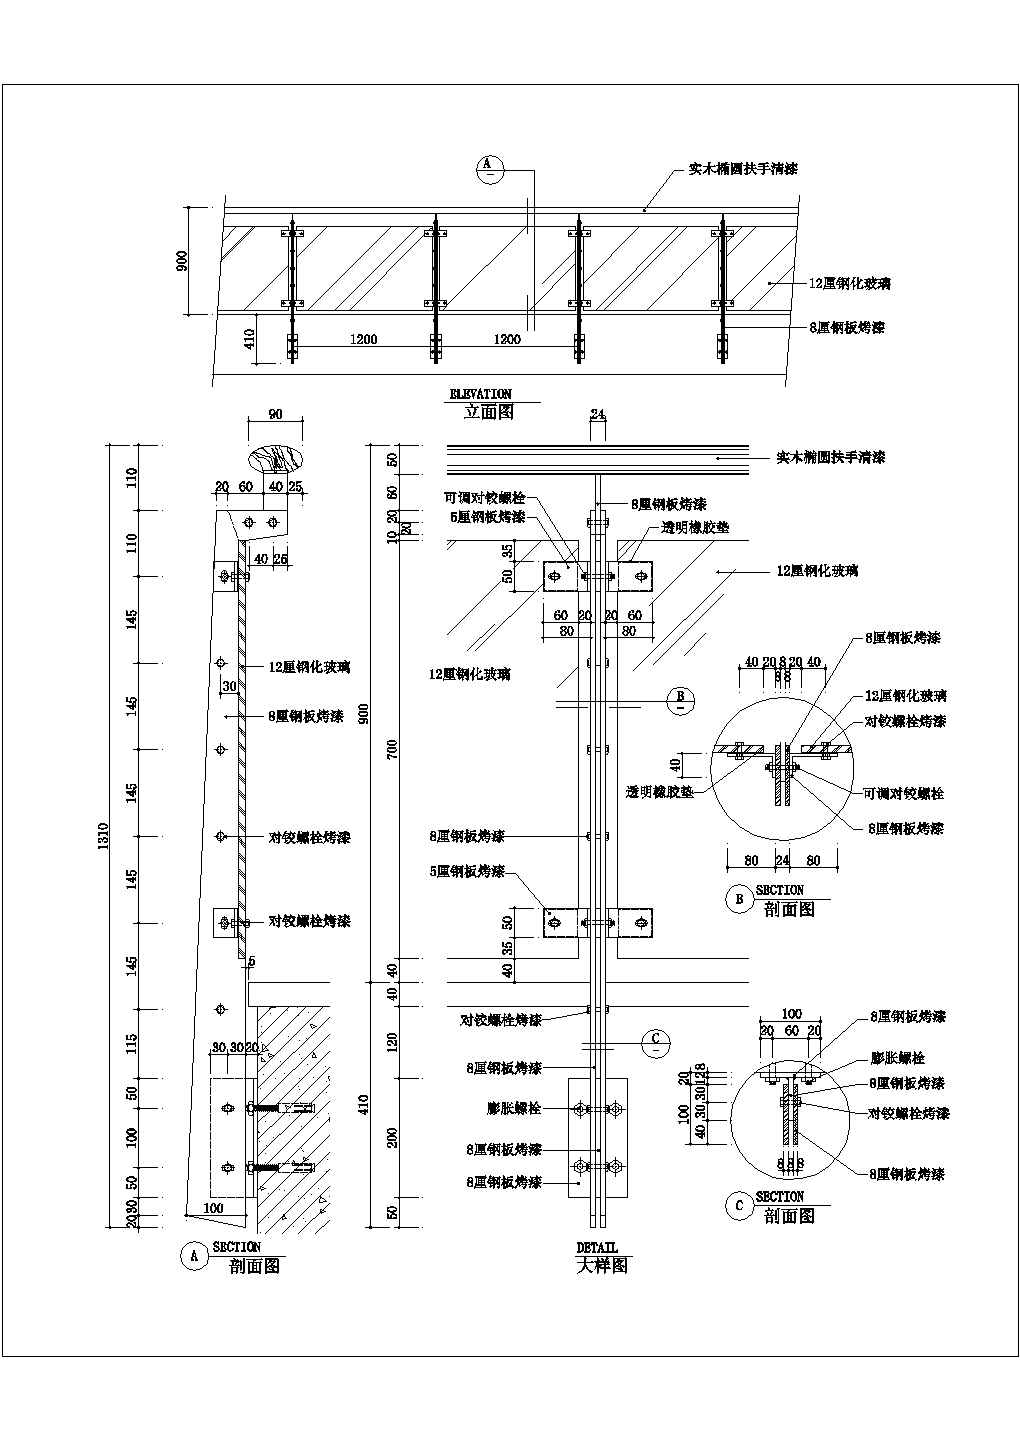 某扶手CAD构造详细施工节点设计图纸